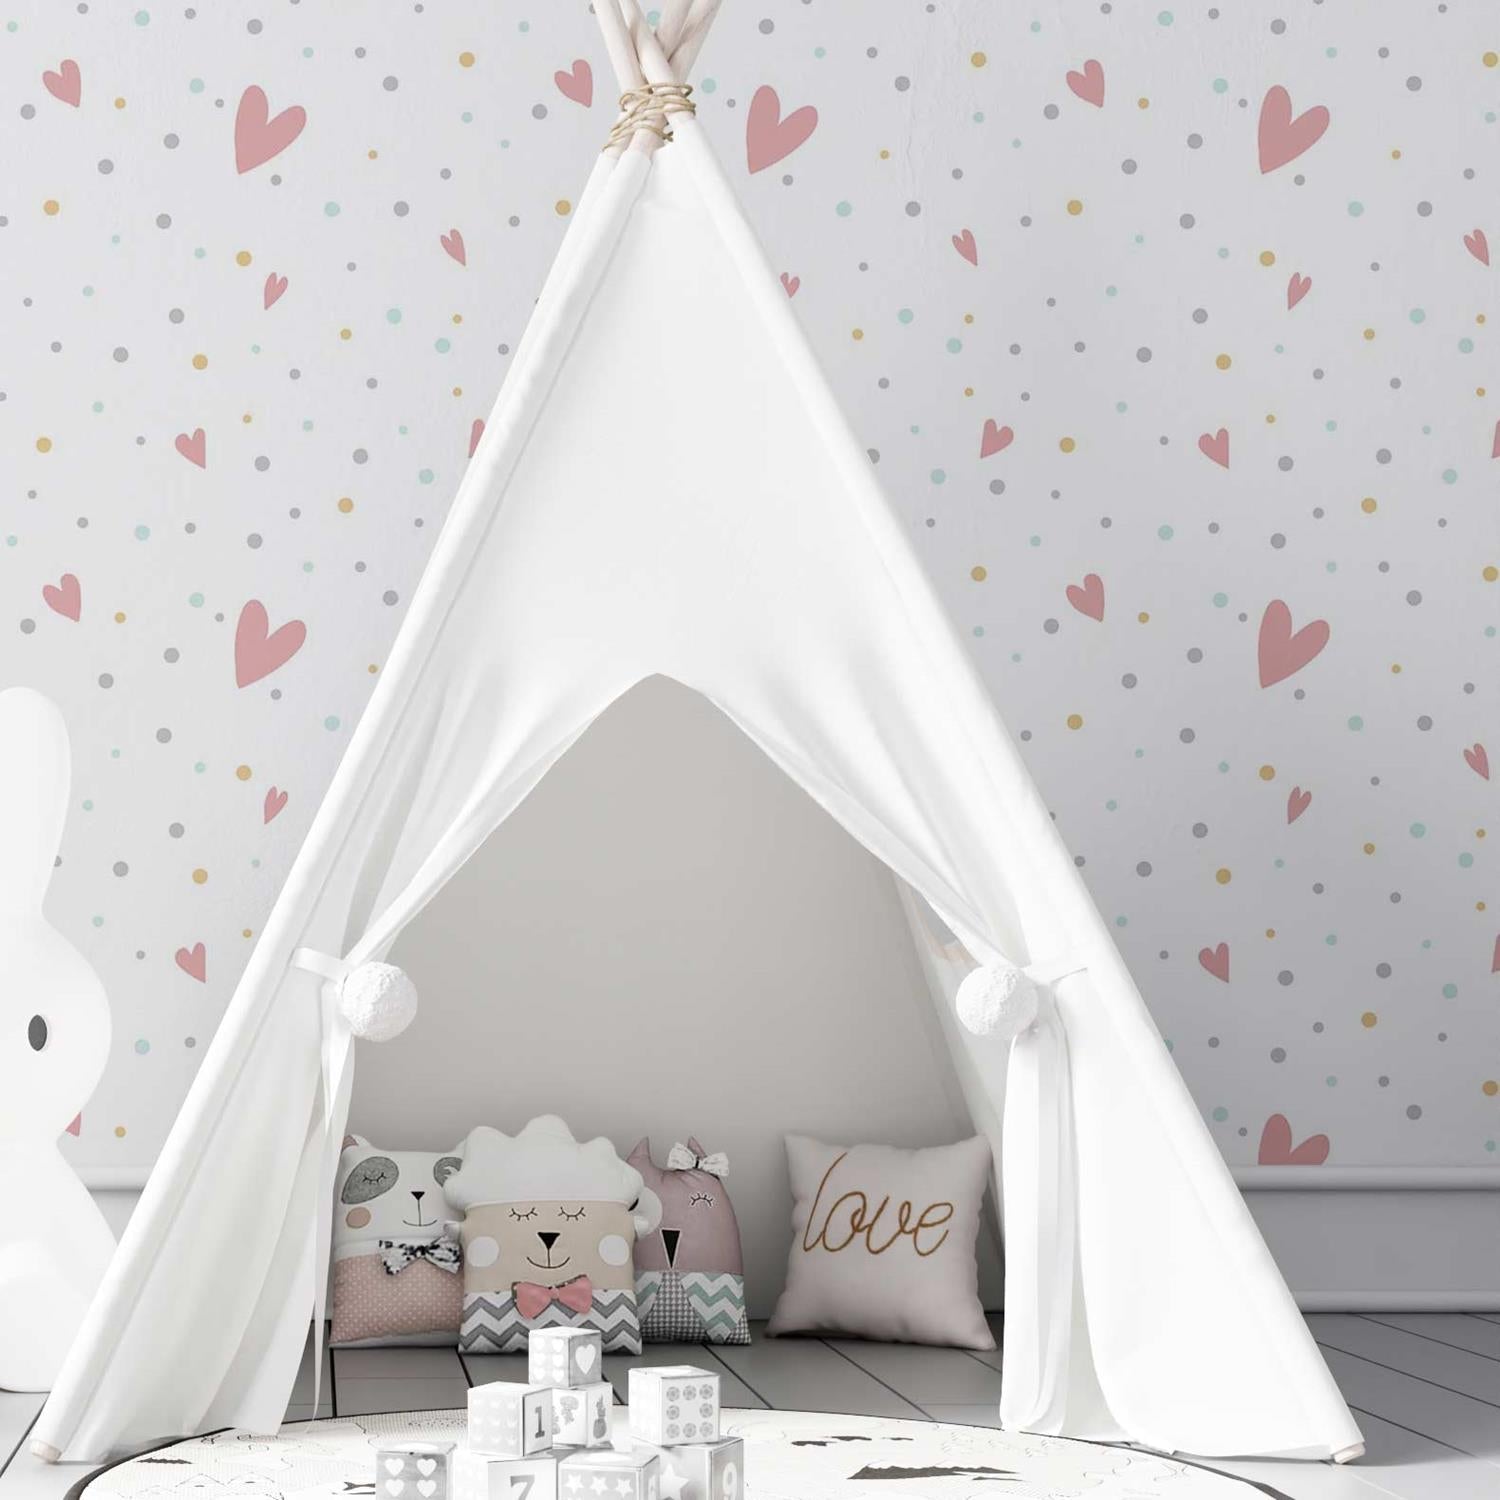 tenda caseira montada em frente ao papel de parede branco com bolinhas e corações coloridos